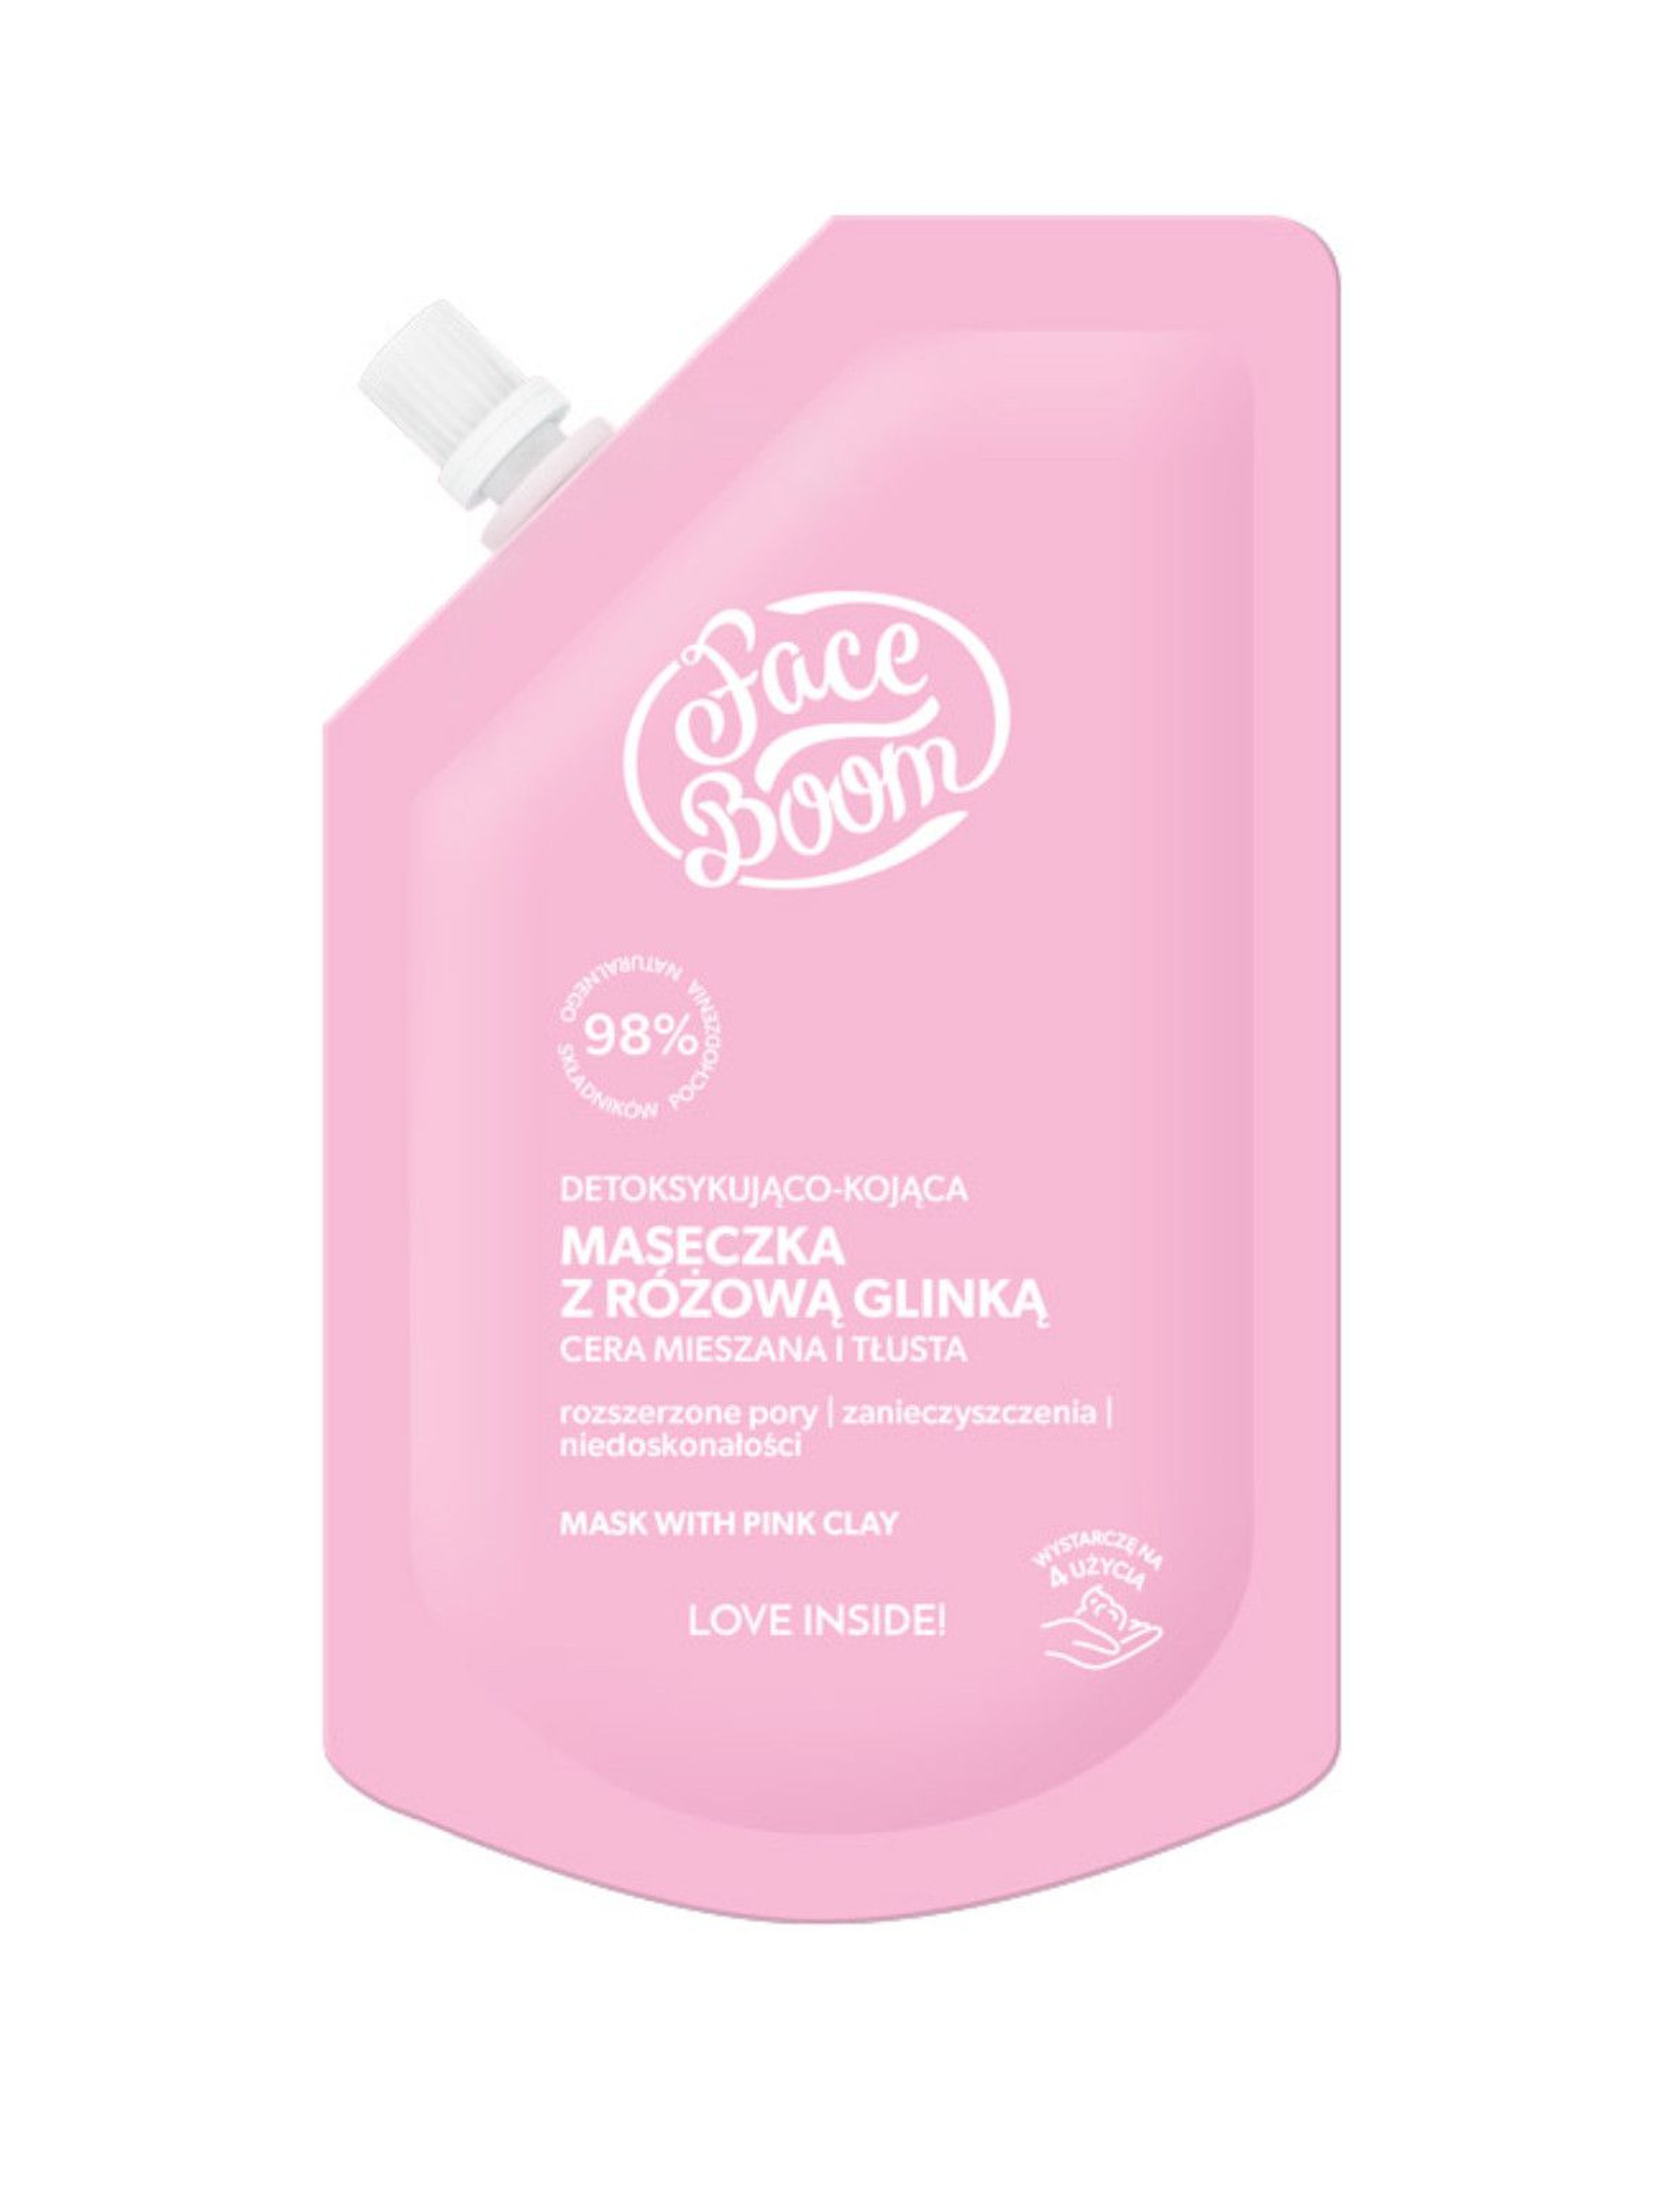 BB FaceBoom Detoksykująco - kojąca maseczka z różową glinką 40g